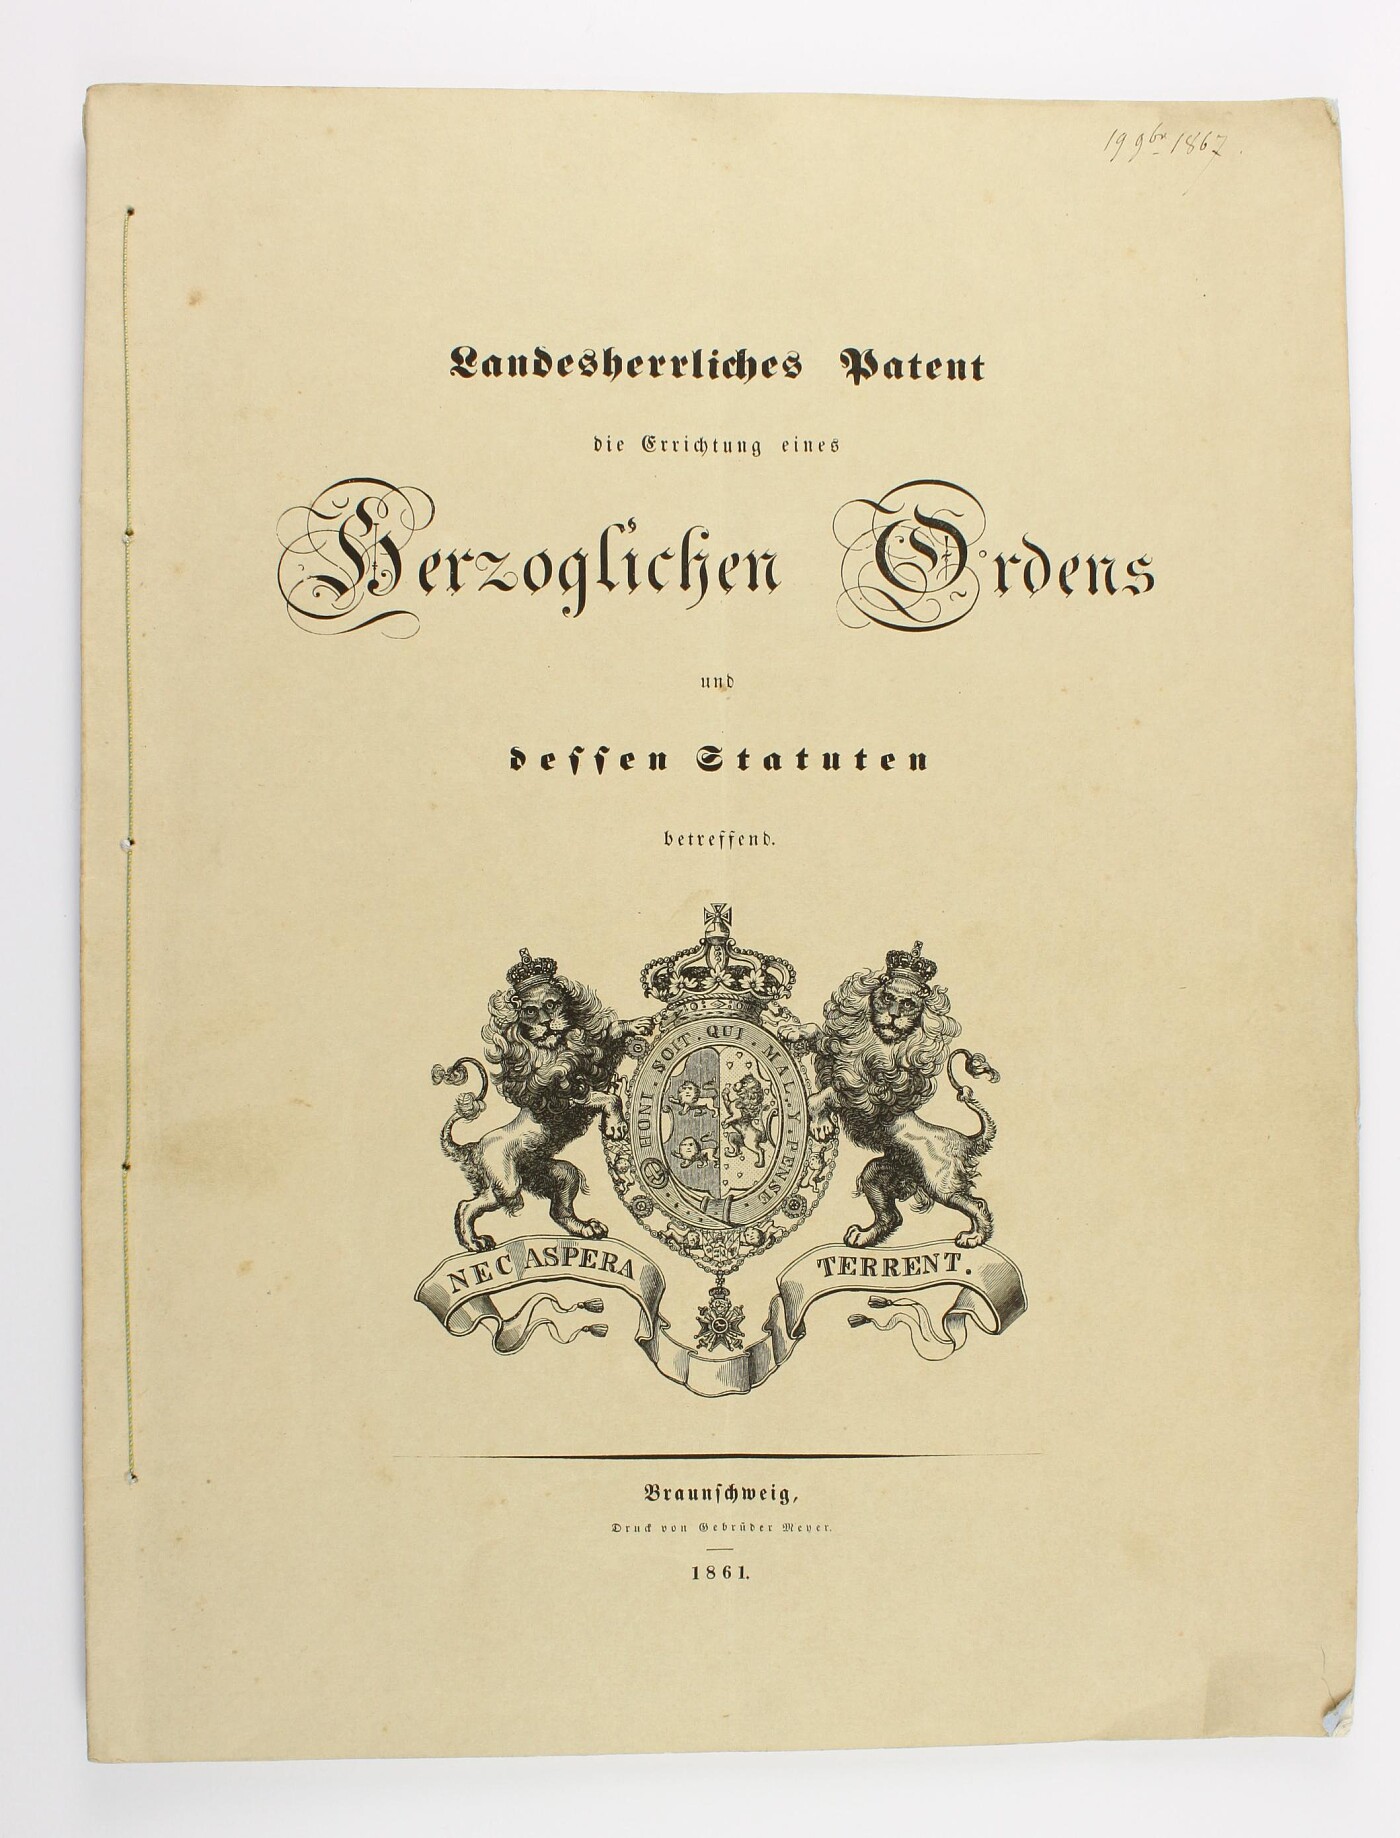 Statuten des Herzoglichen Hausordens - Image 2 of 3